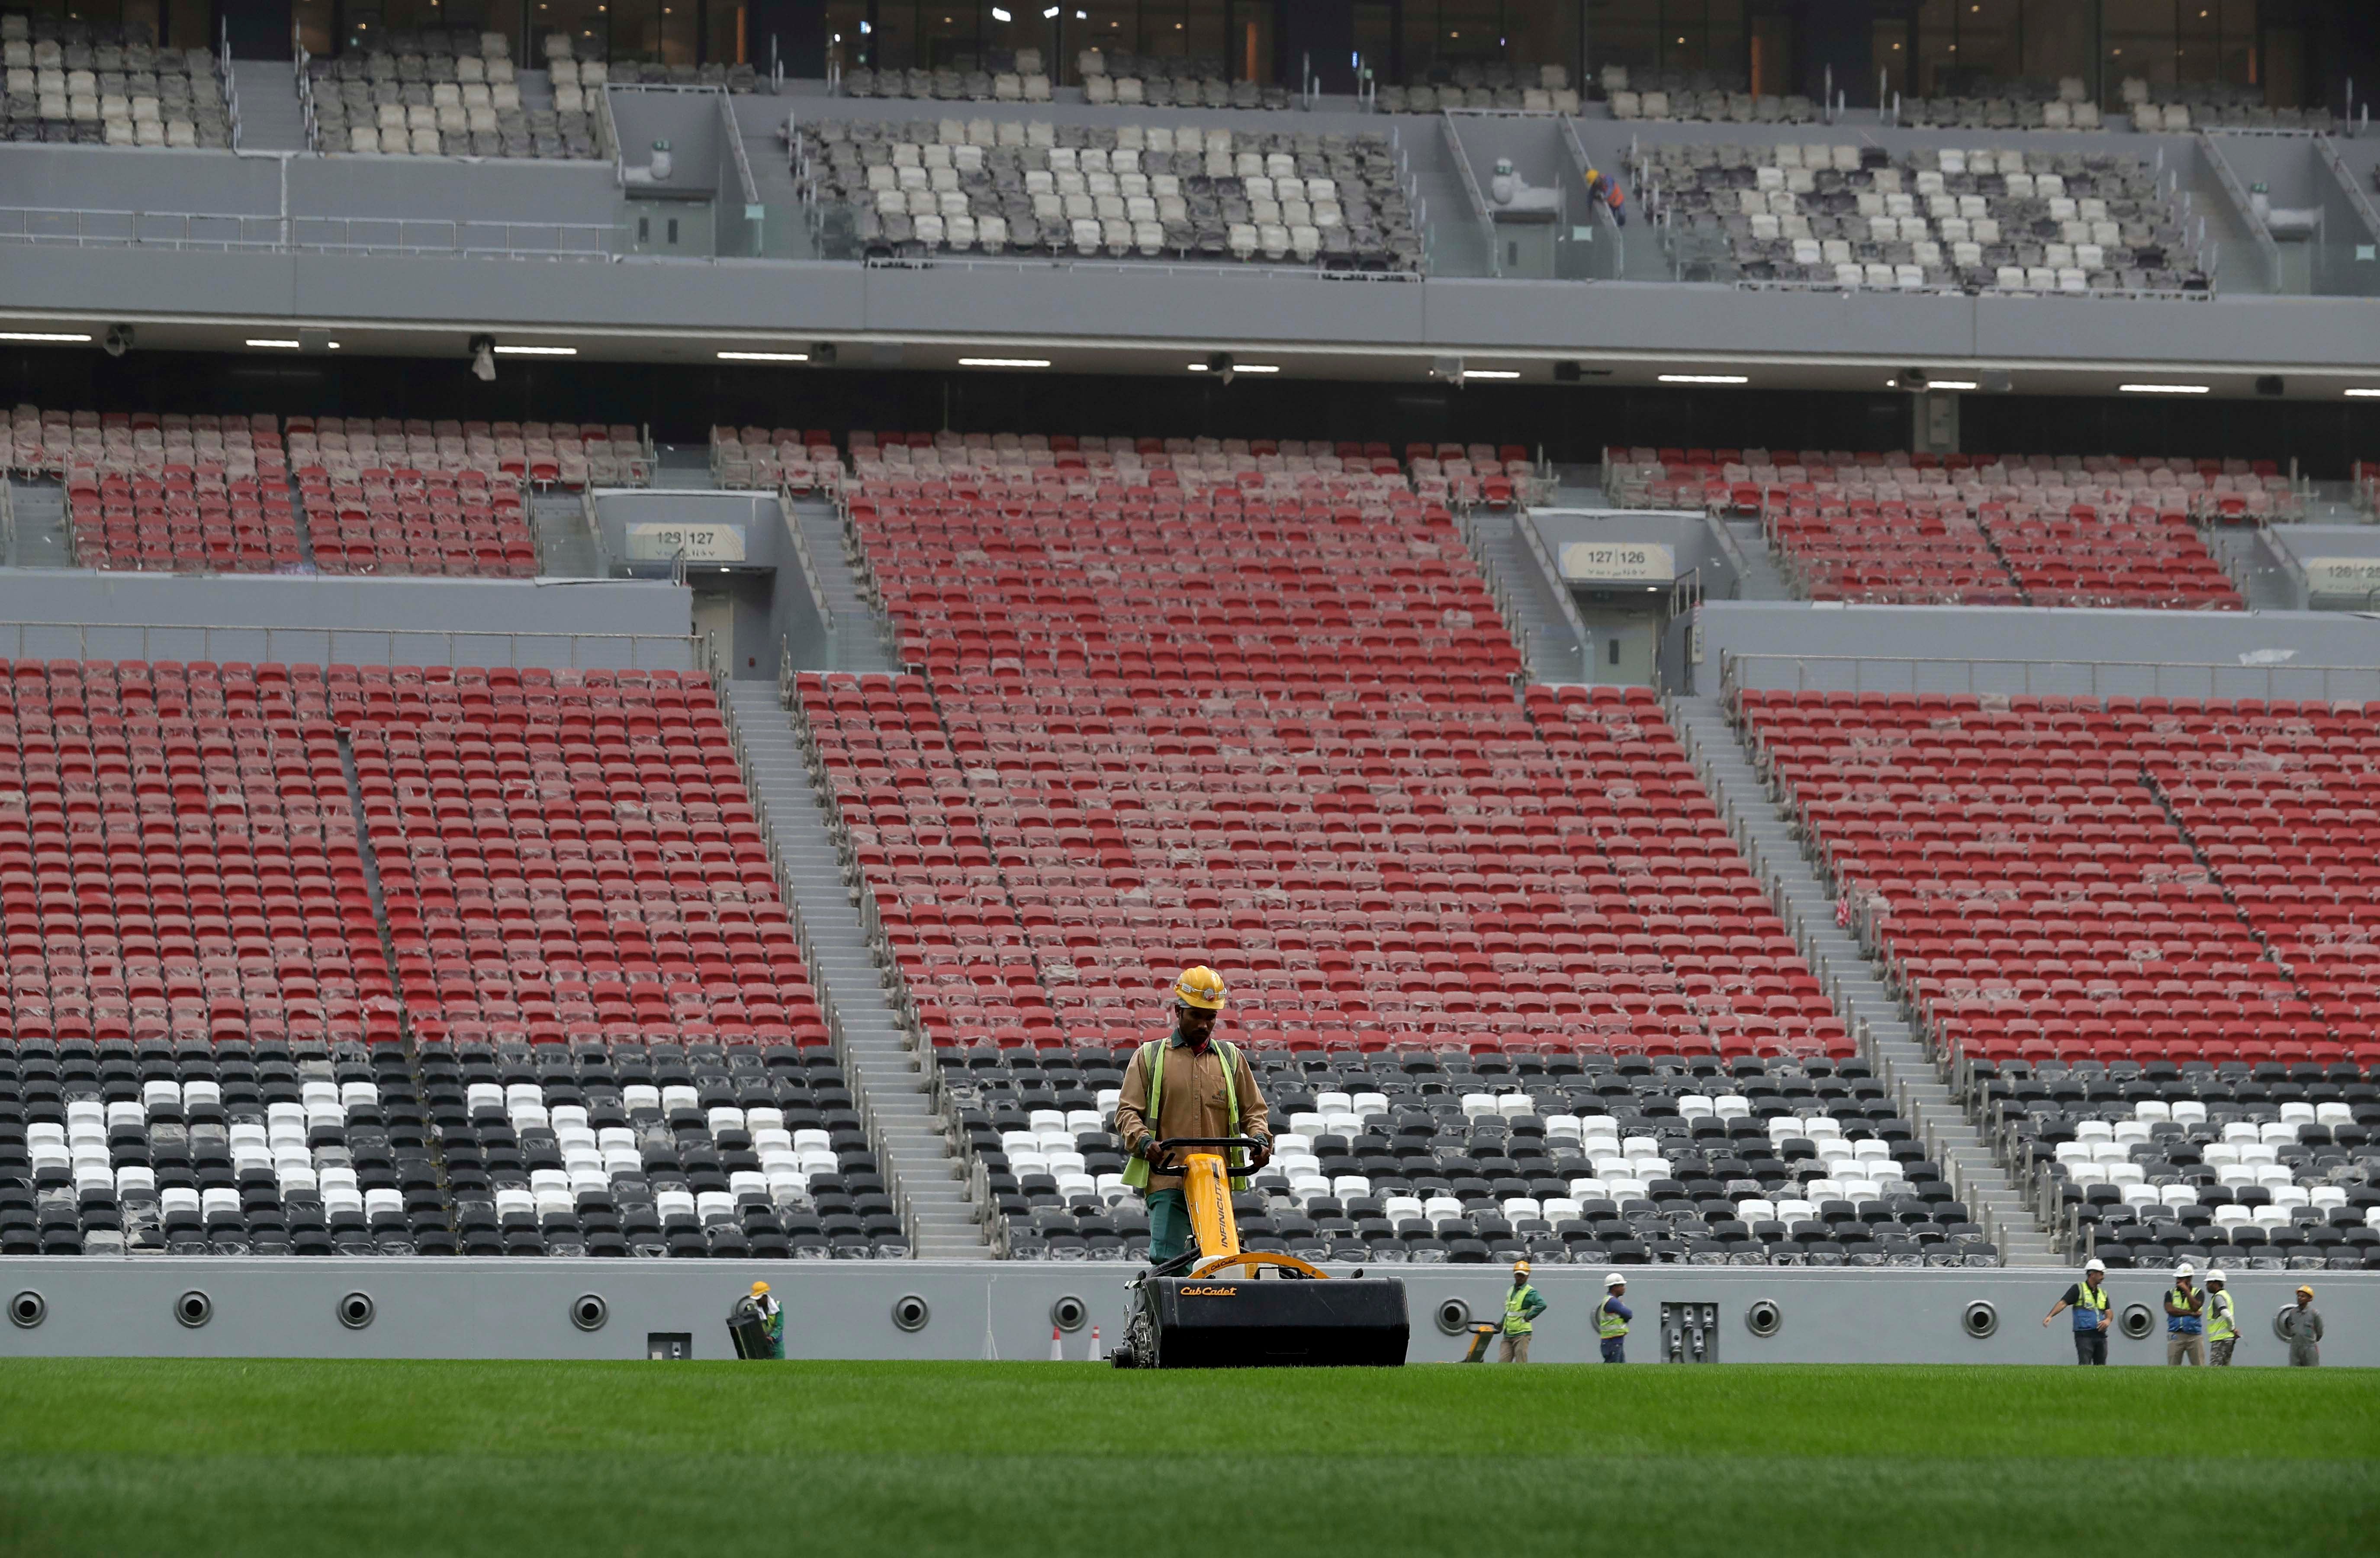 A worker mows a stadium field